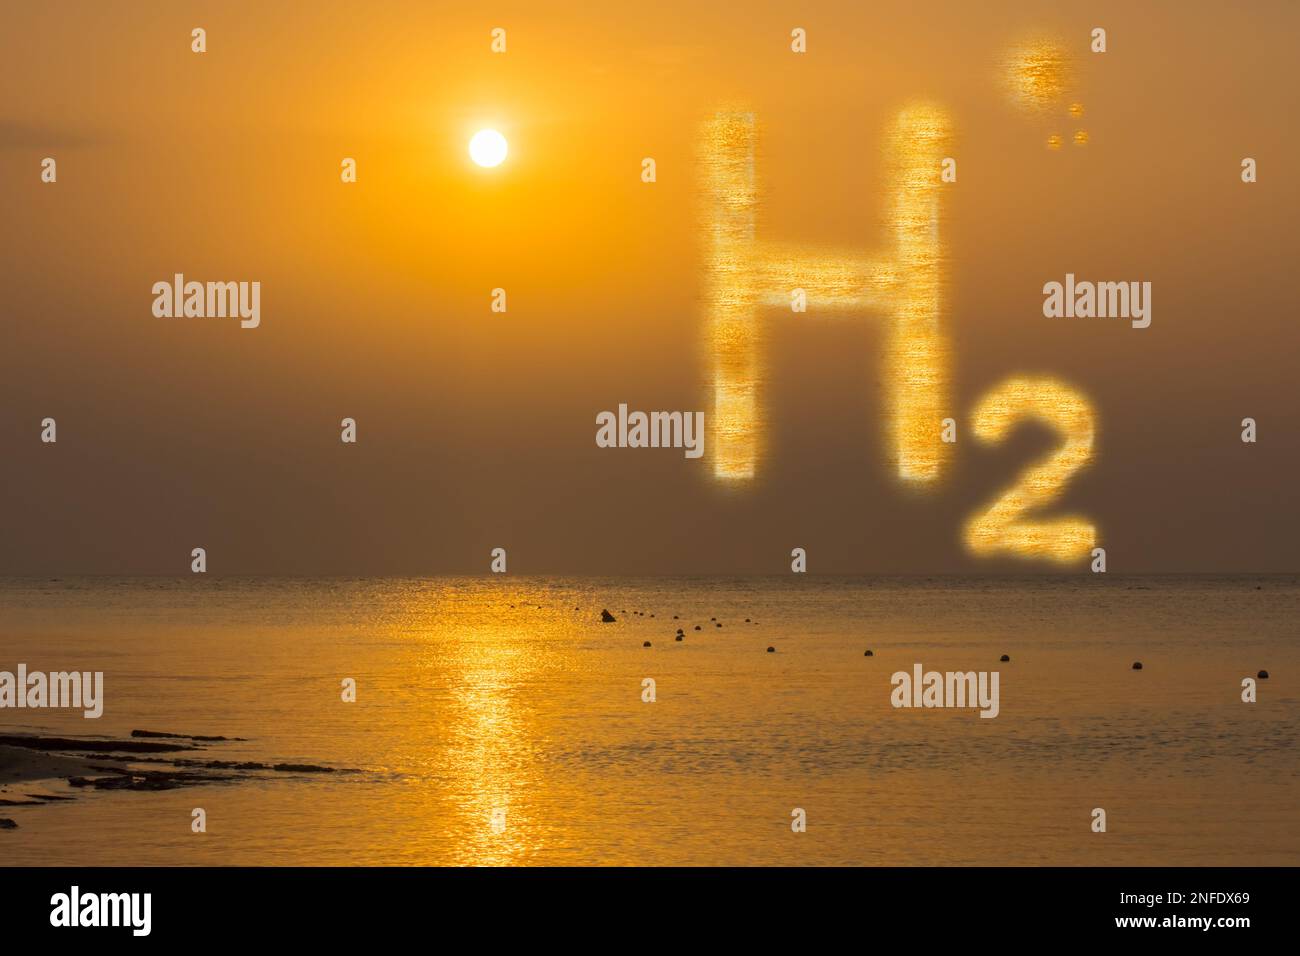 3D illustration énergie renouvelable énergie pure lueur orange H2 hydrogène et wam soleil sur le ciel avec des réflexions pendant le coucher du soleil Banque D'Images